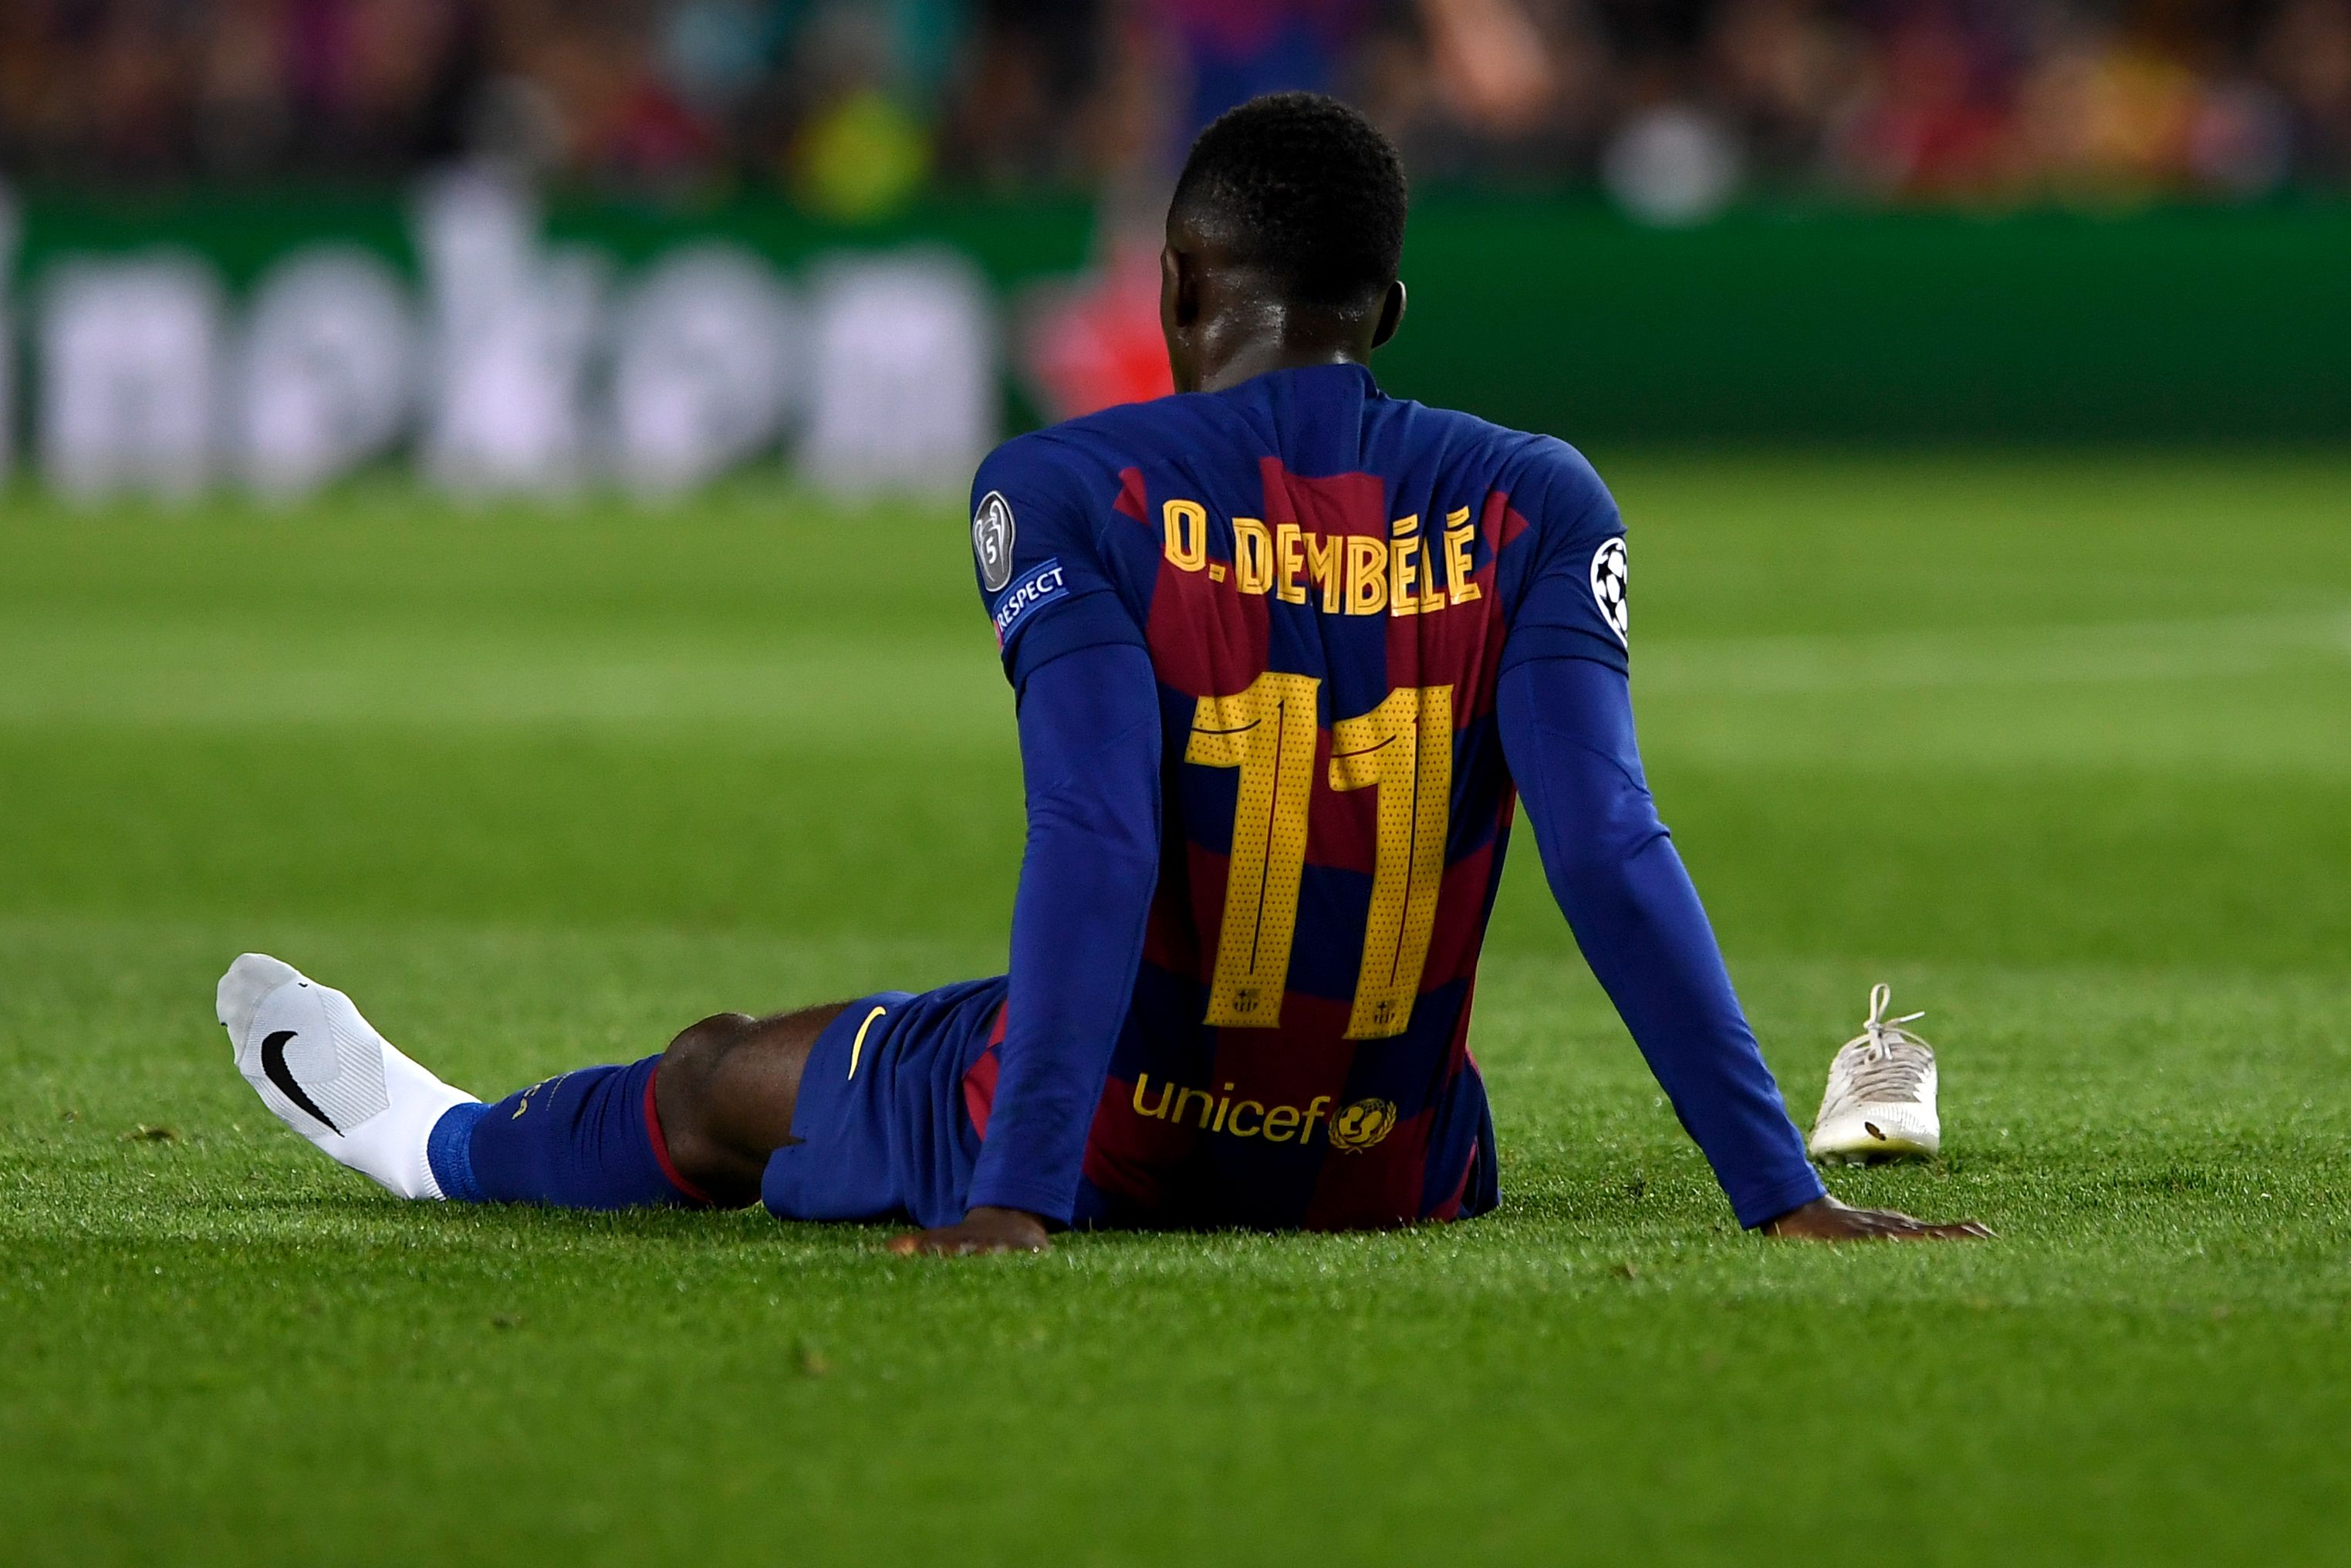 El delantero francés Ousmane Dembélé ha tenido una mala temporada llena de lesiones. (Foto Prensa Libre: AFP)